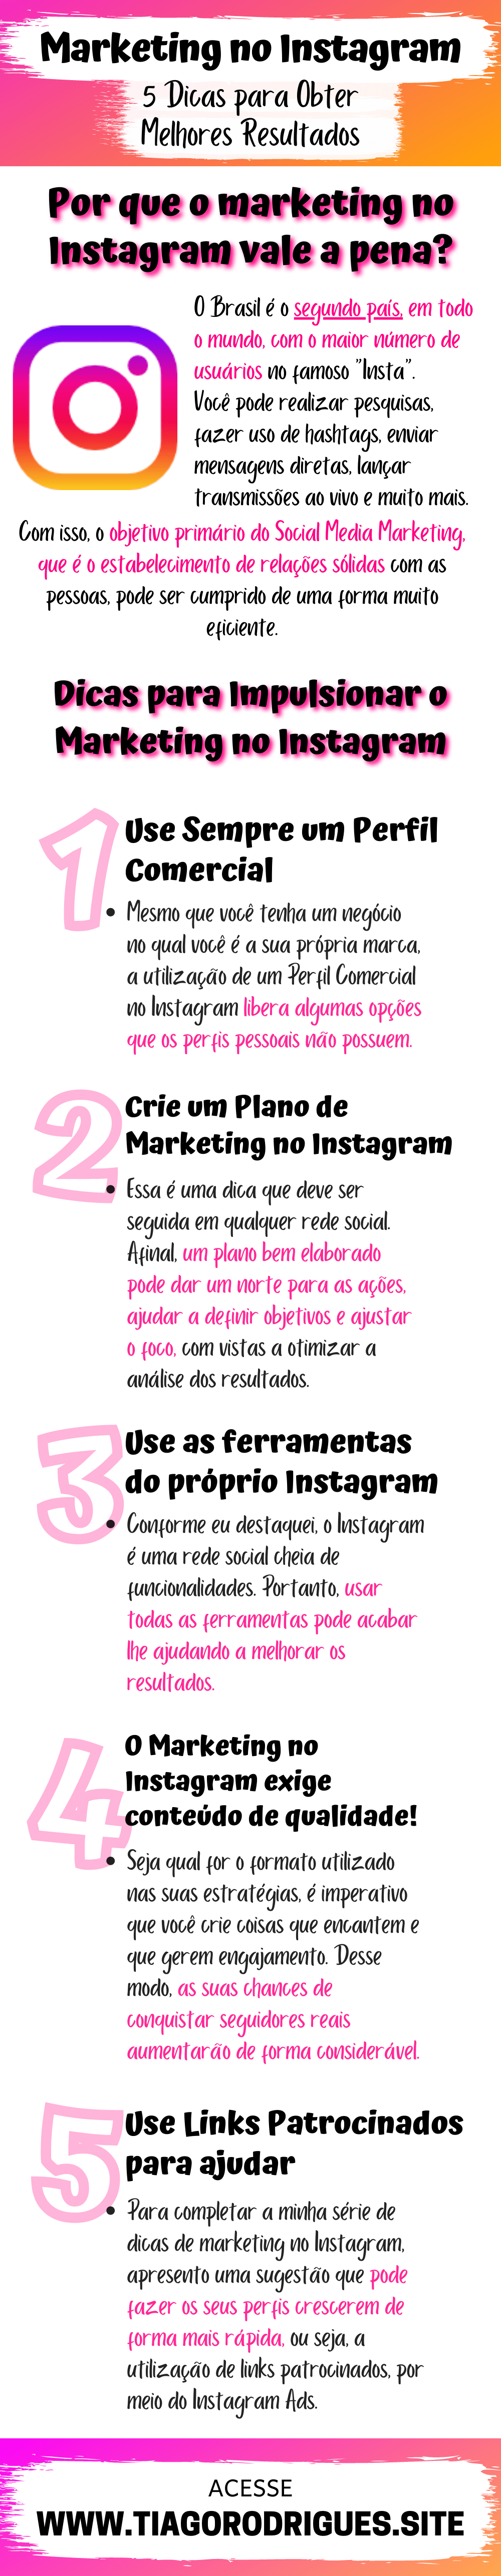 Infográfico sobre o artigo Marketing no Instagram 5 Dicas para Obter Melhores Resultados